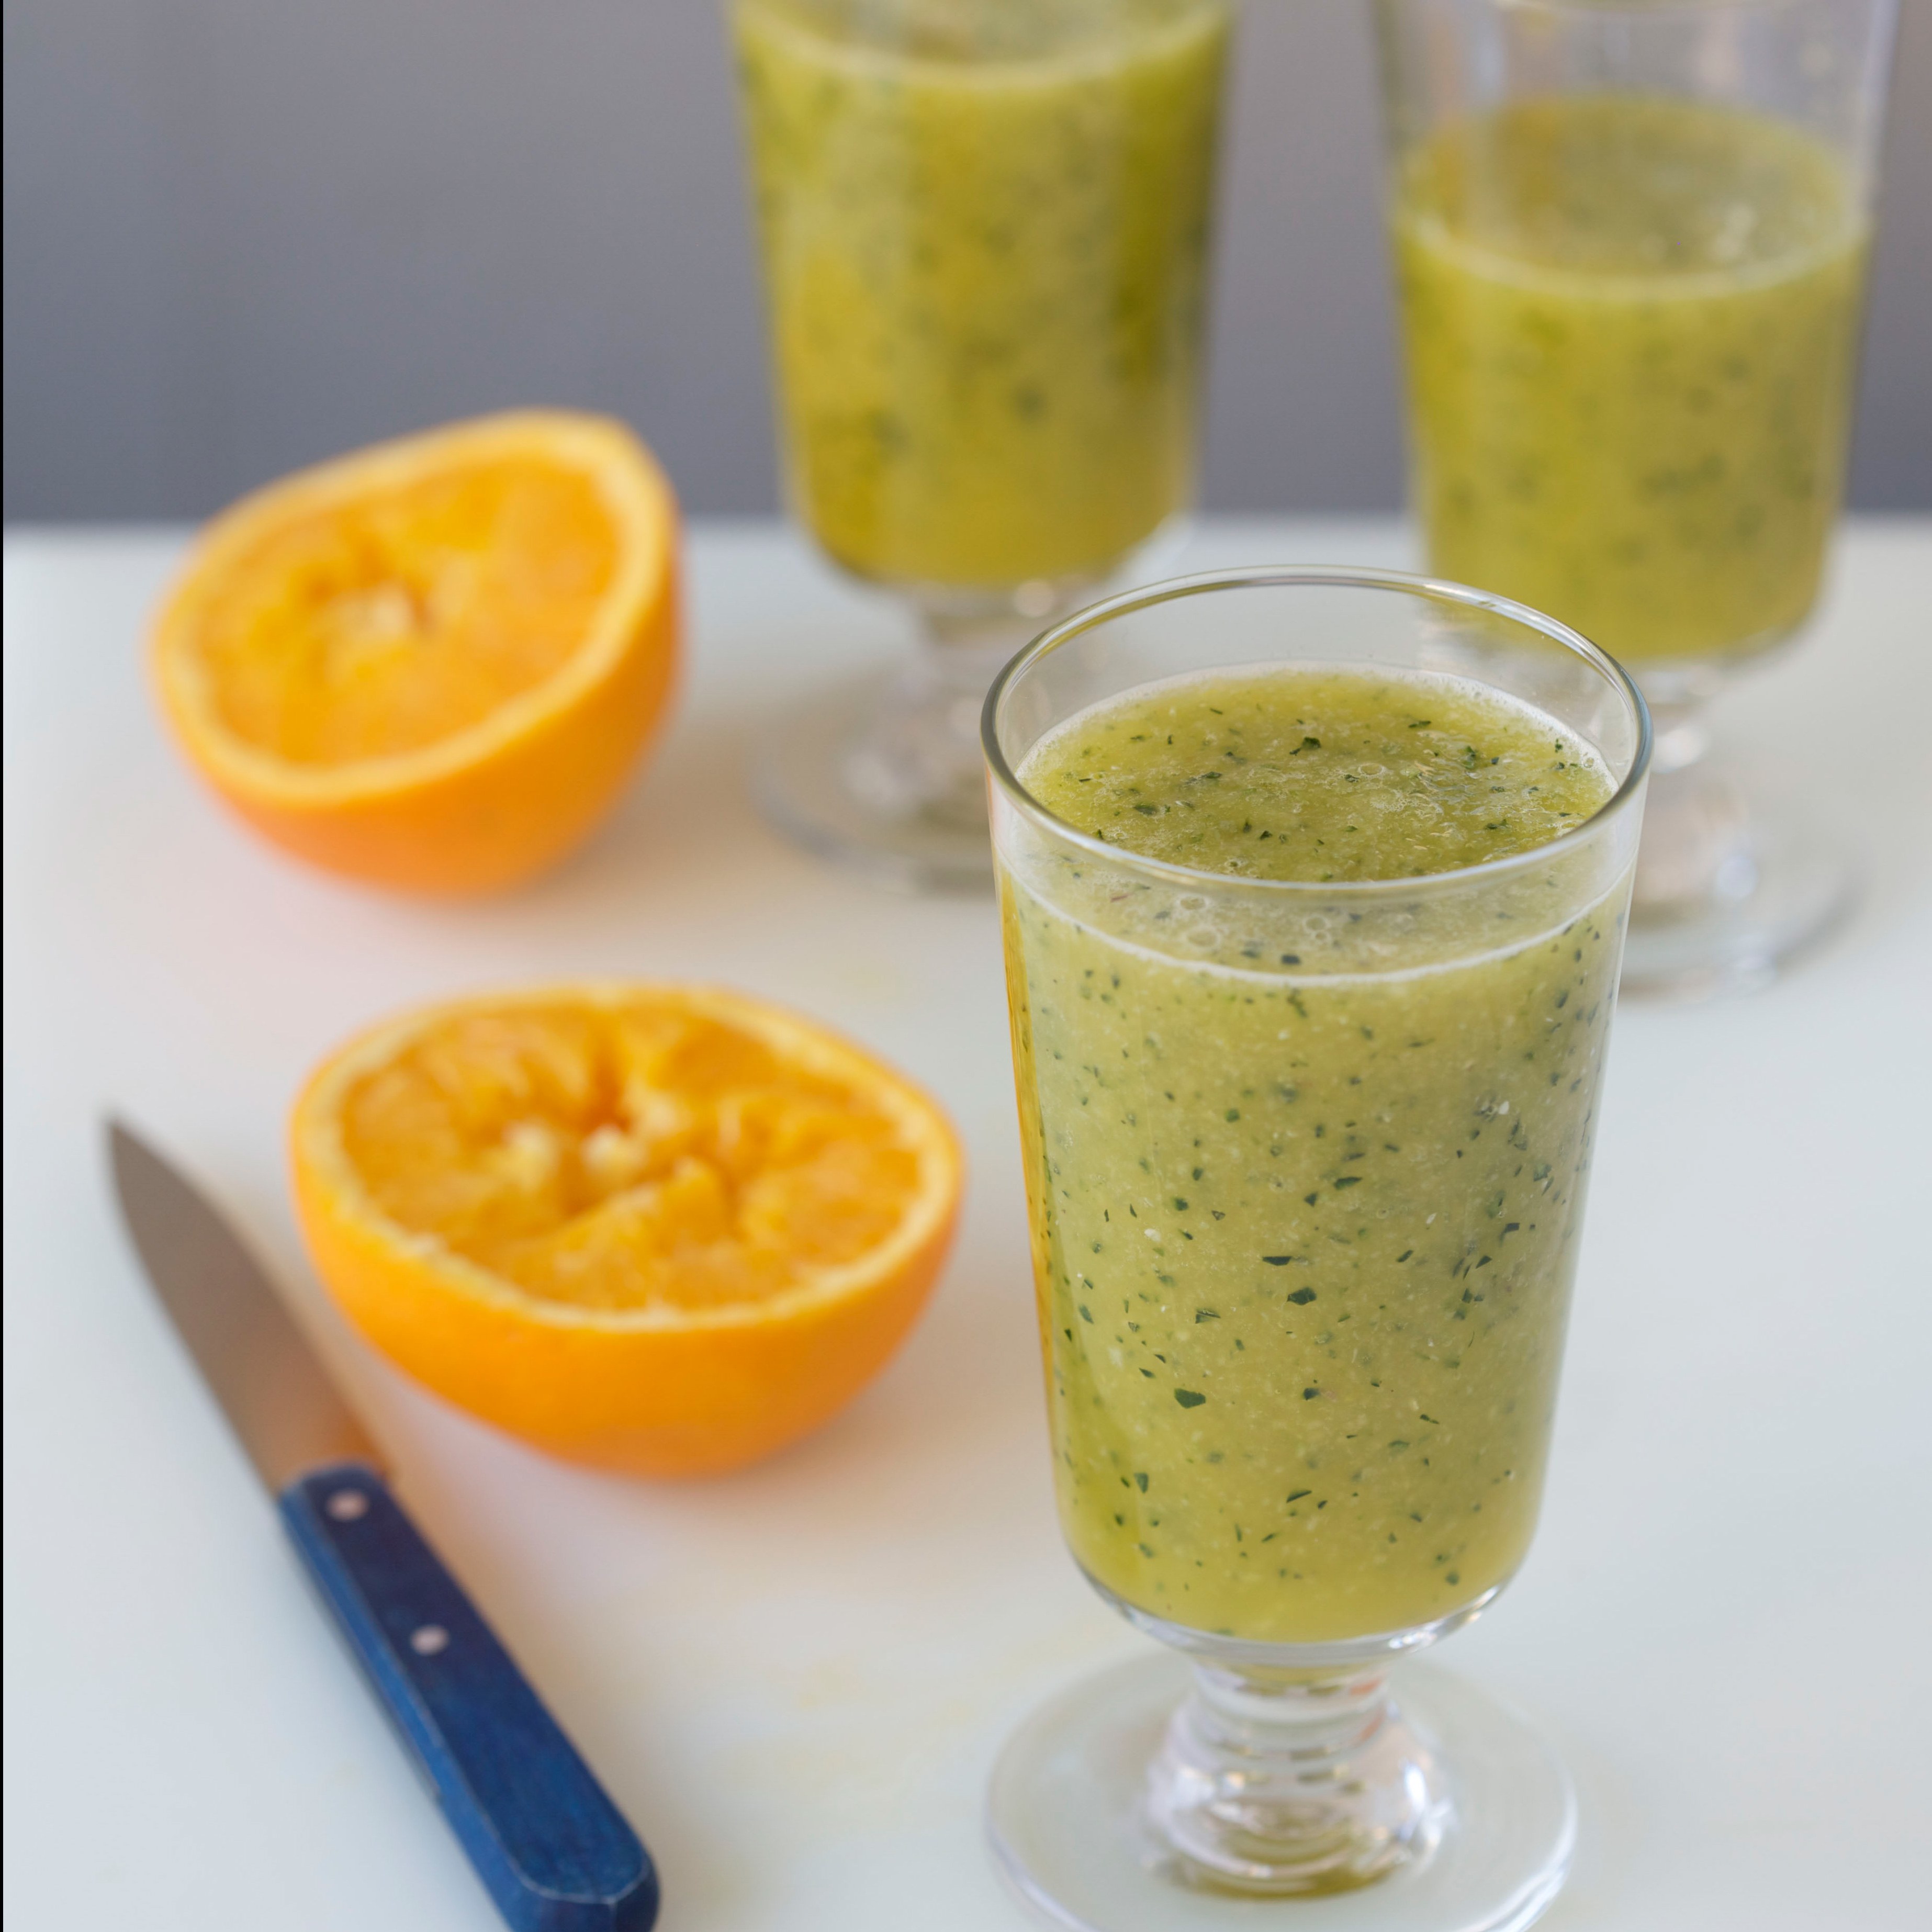 Chilled Cucumber and Orange Juice with Oregano recipe | Epicurious.com